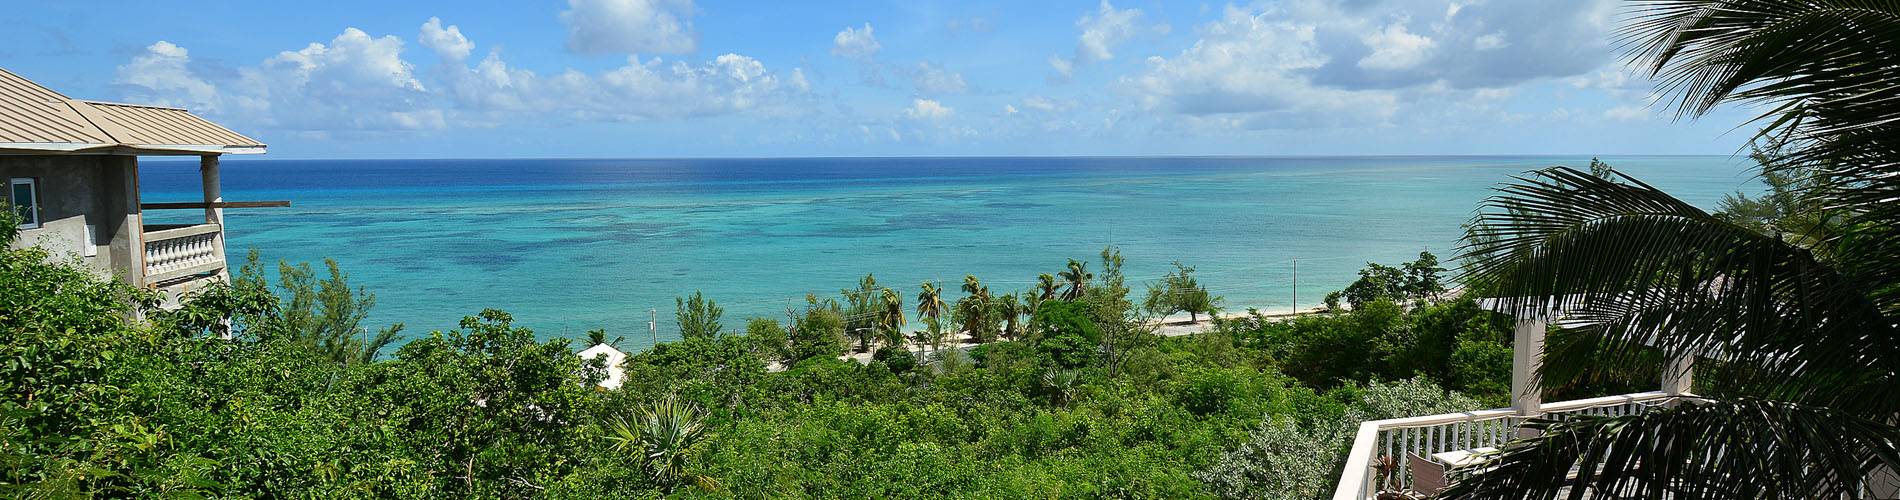 Tauchreise Bahamas | A Stone's Throw Away Hotel | Strandlage